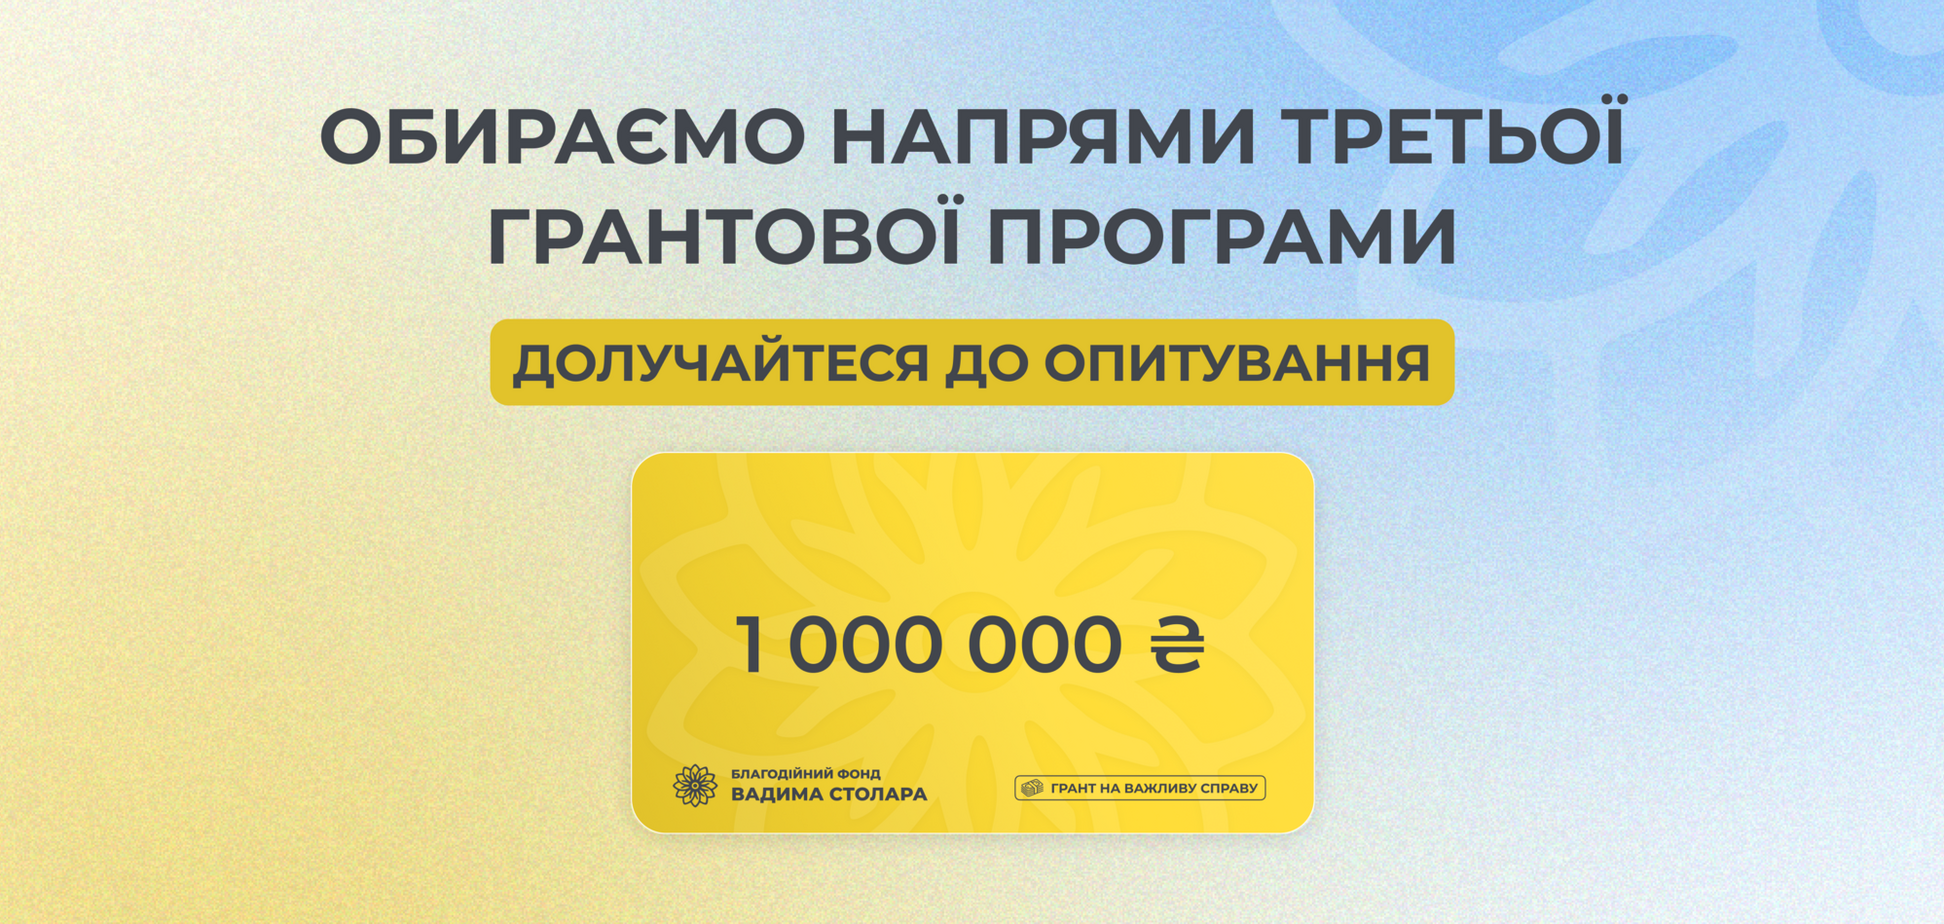 Третя грантова програма на 1 млн грн від Фонду Вадима Столара: українці можуть обрати пріоритетні напрями